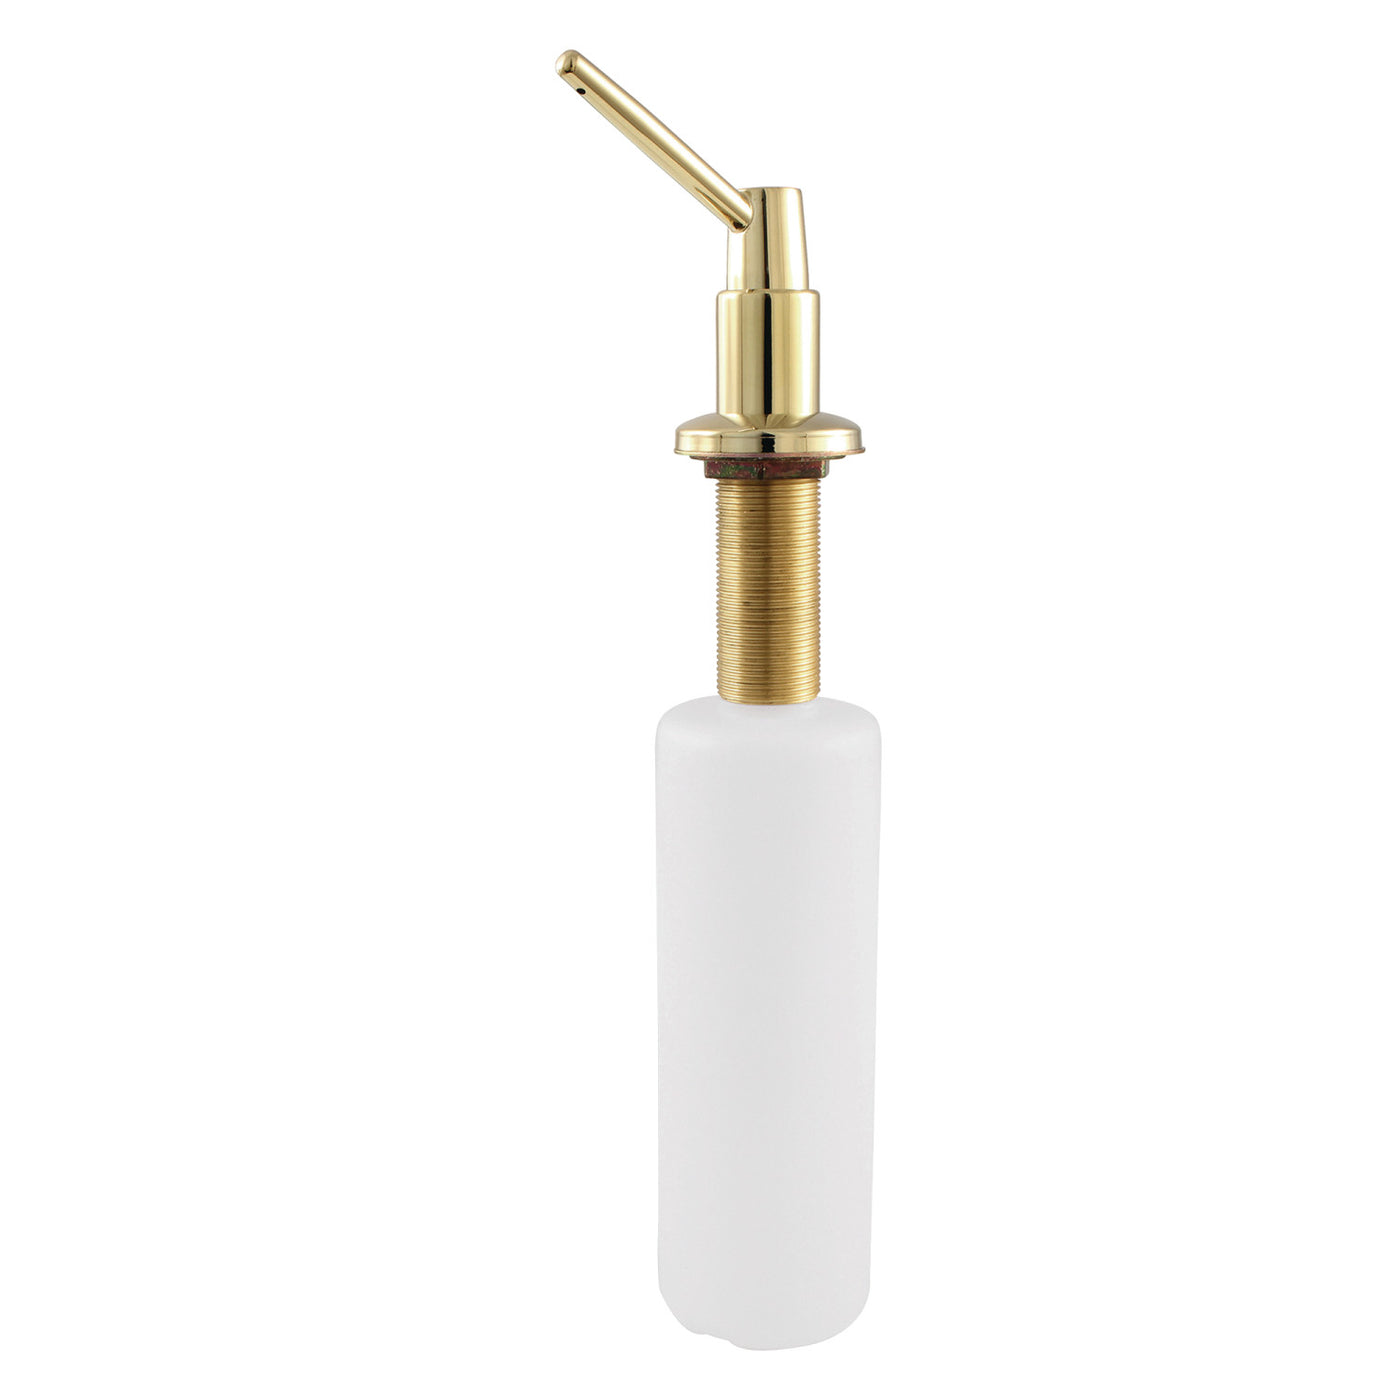 Elements of Design ESD8642 Soap Dispenser, Polished Brass